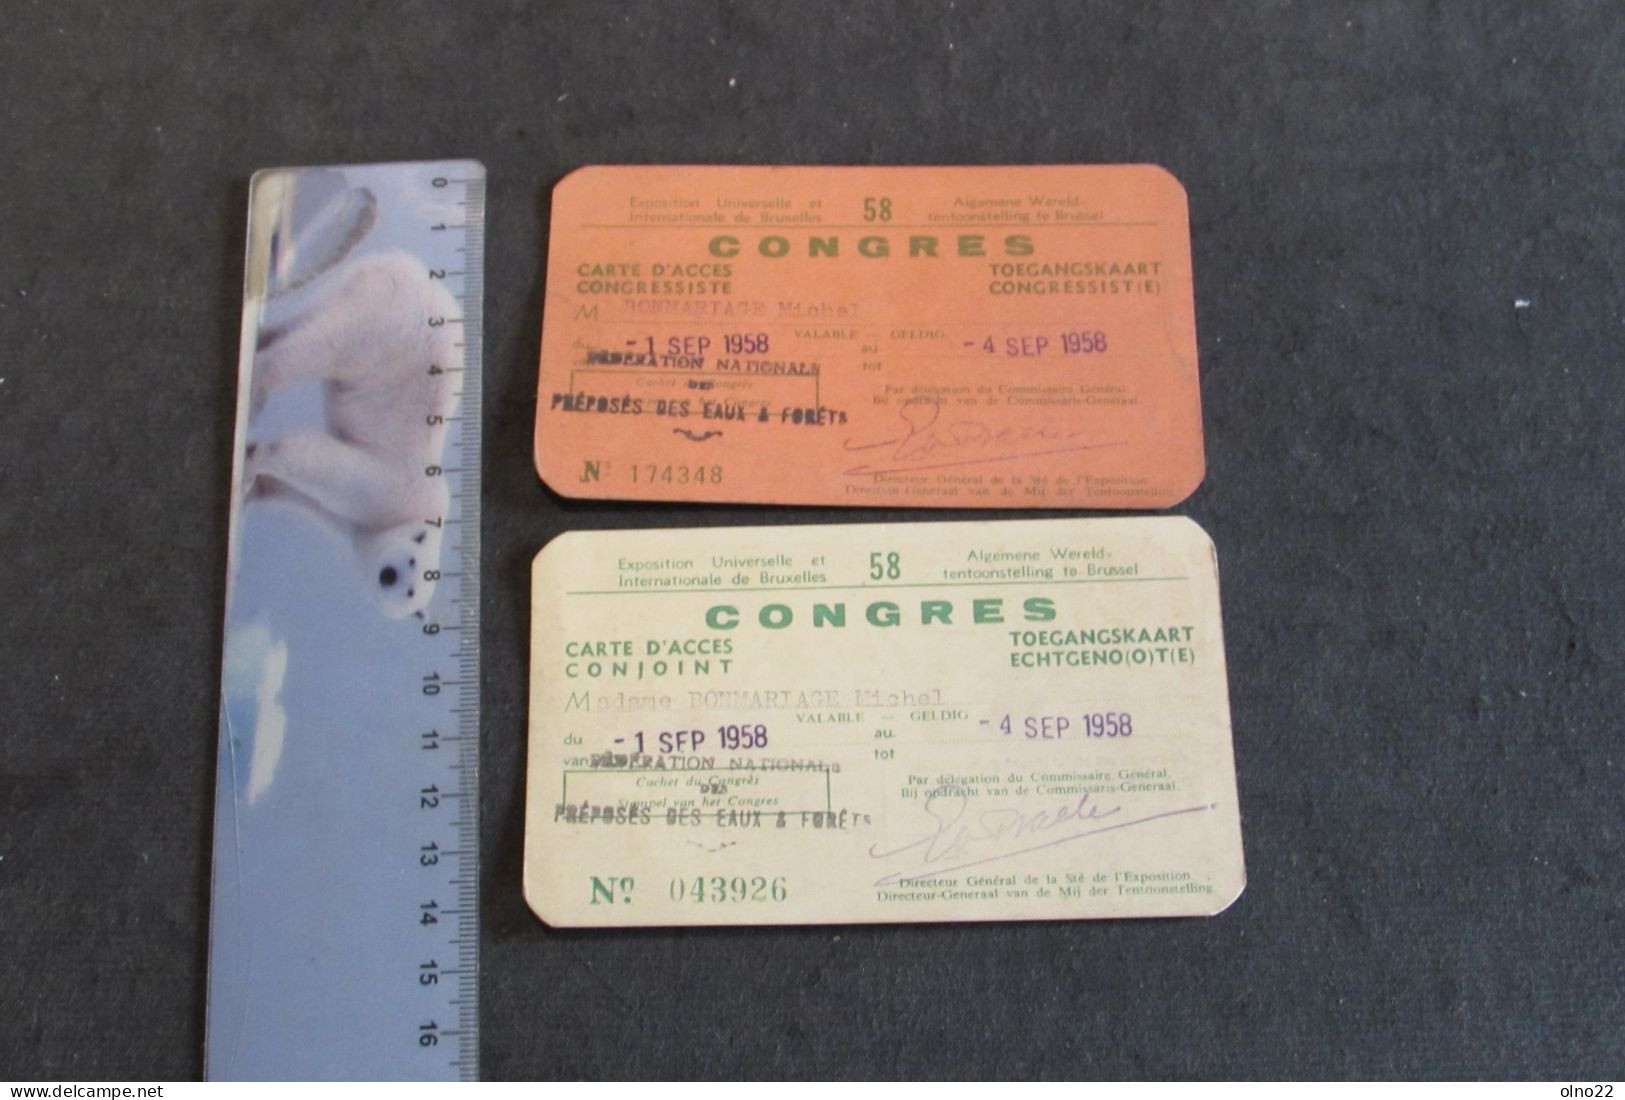 BRUXELLES EXPO 1958 - CARTE D'ACCES A UN CONGRES DU 1 AU 4/9/58 - A  M. ET Mme BONMARIAGE MICHEL - VOIR SCANS - Tickets D'entrée